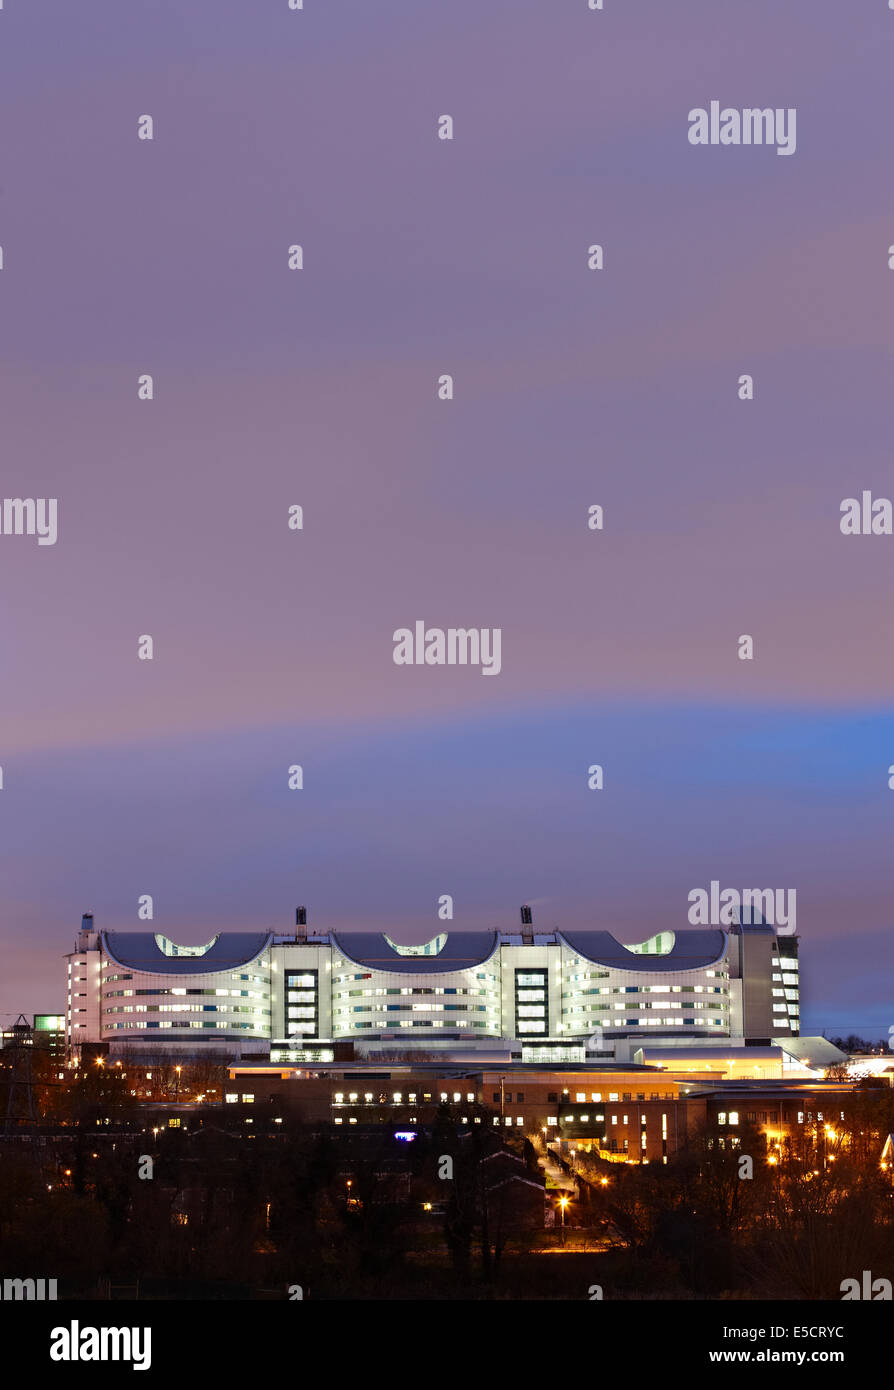 QE oder Queen Elizabeth Hospital Edgbaston Birmingham unter Public-Private-Partnership (PPP), Dämmerung Nacht Bild gebaut. Stockfoto